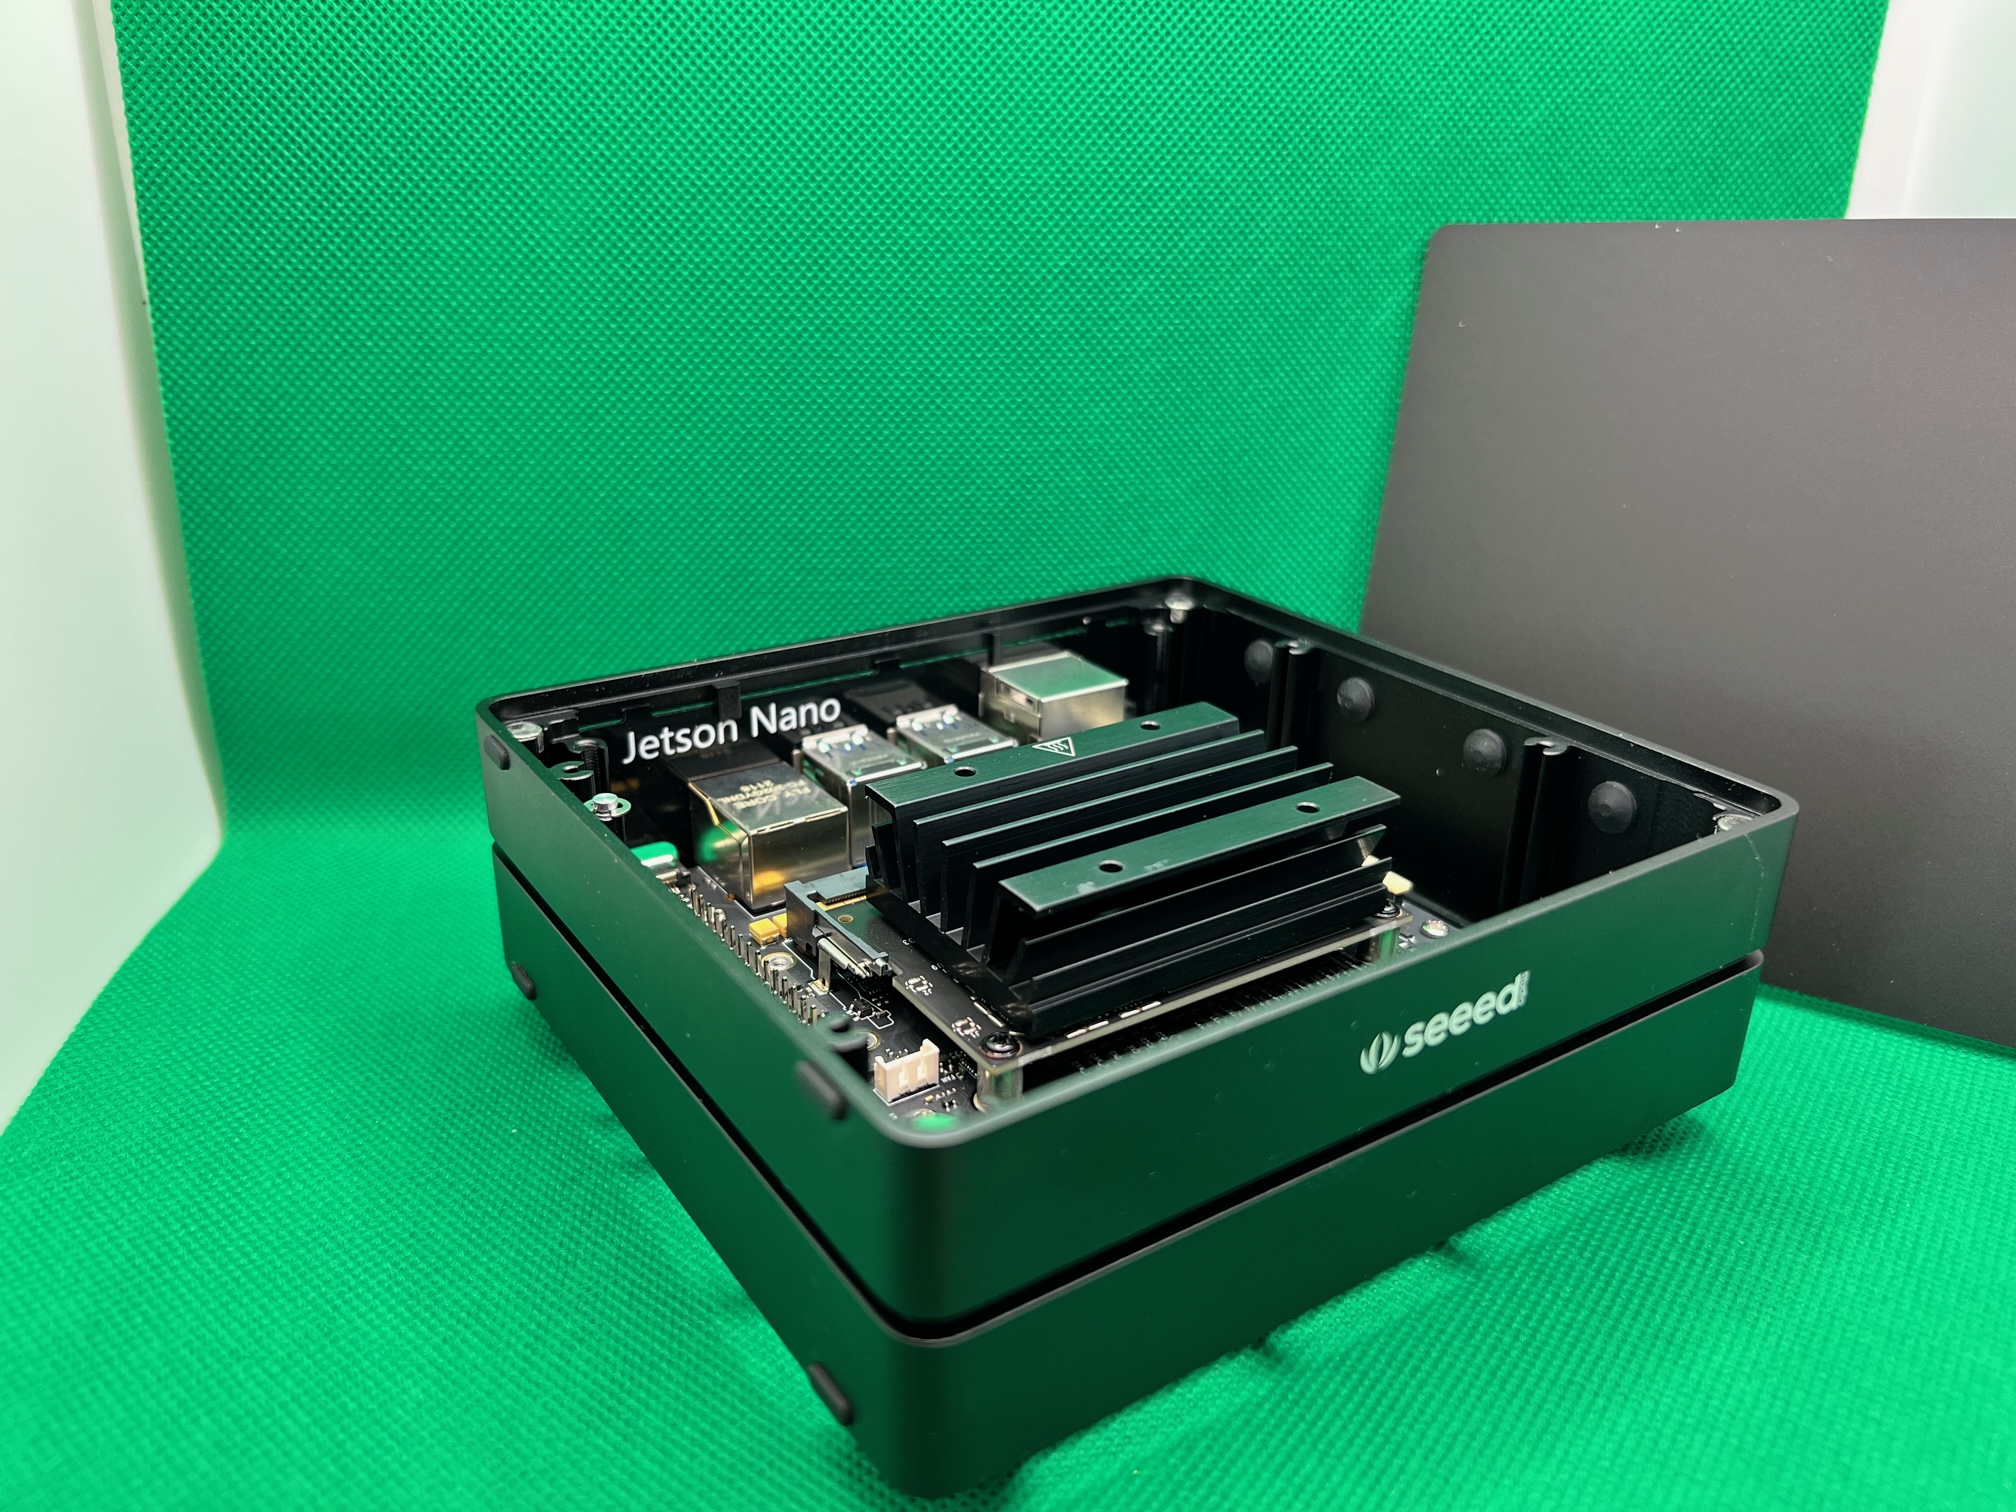 Aluminum case opened with NVIDIA Jetson Nano